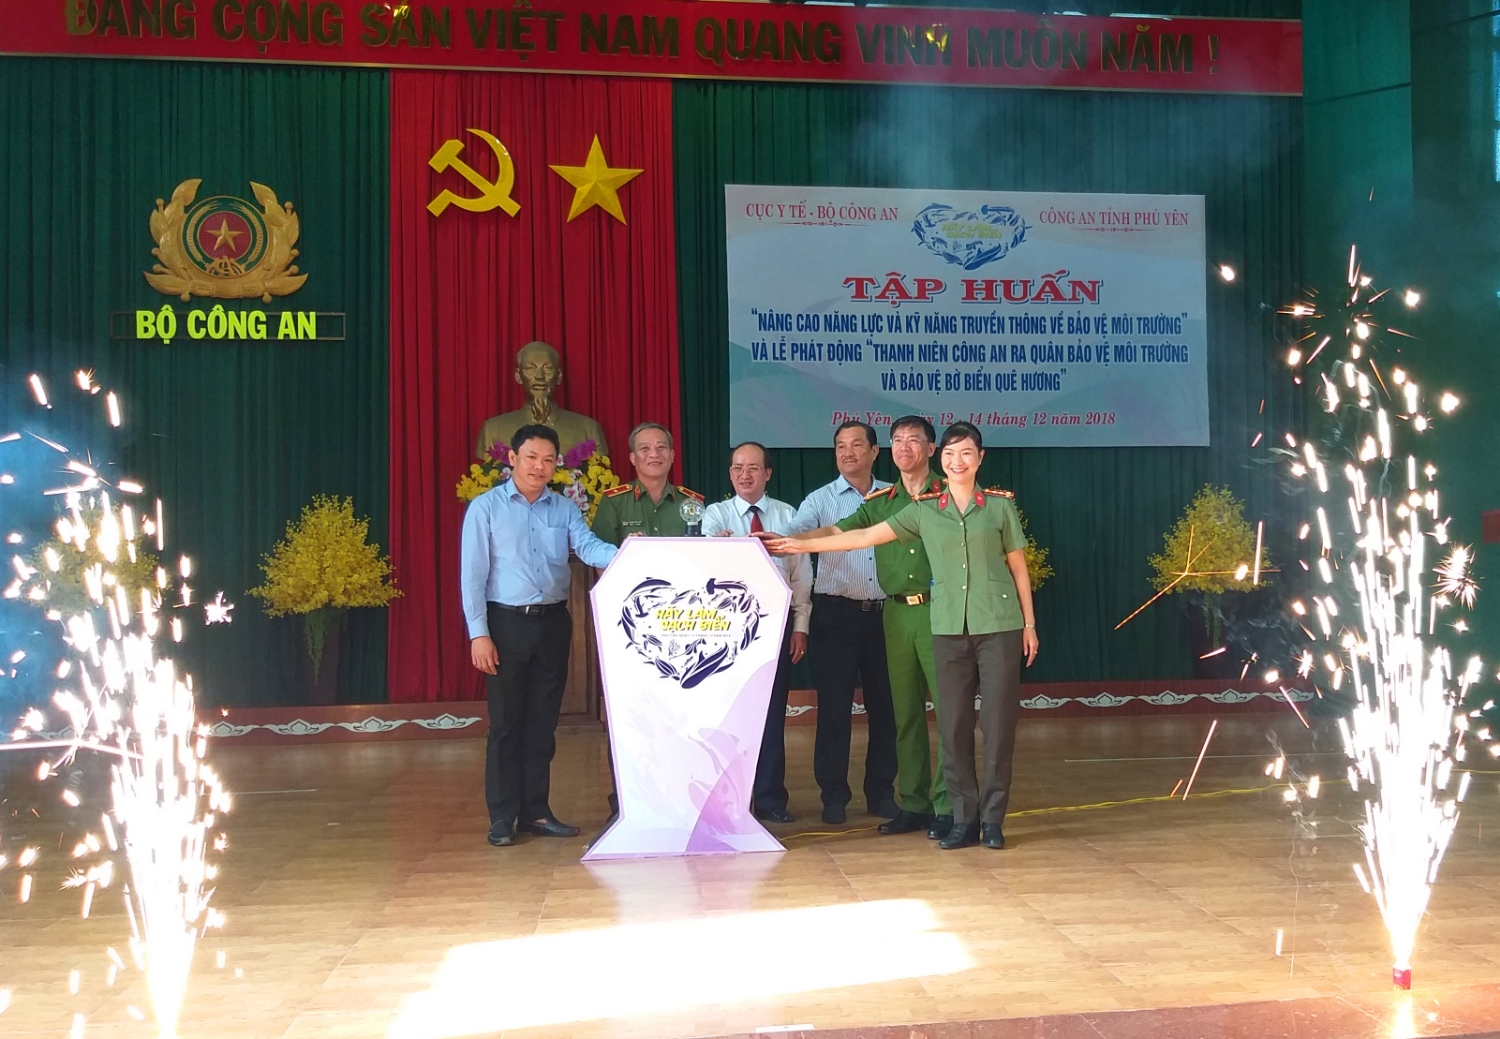 Phó Chủ tịch UBND tỉnh Phan Đình Phùng và Bí thư Tỉnh đoàn Phan Xuân Hạnh cùng đại diện các đơn vị ấn nút phát động lễ ra quân